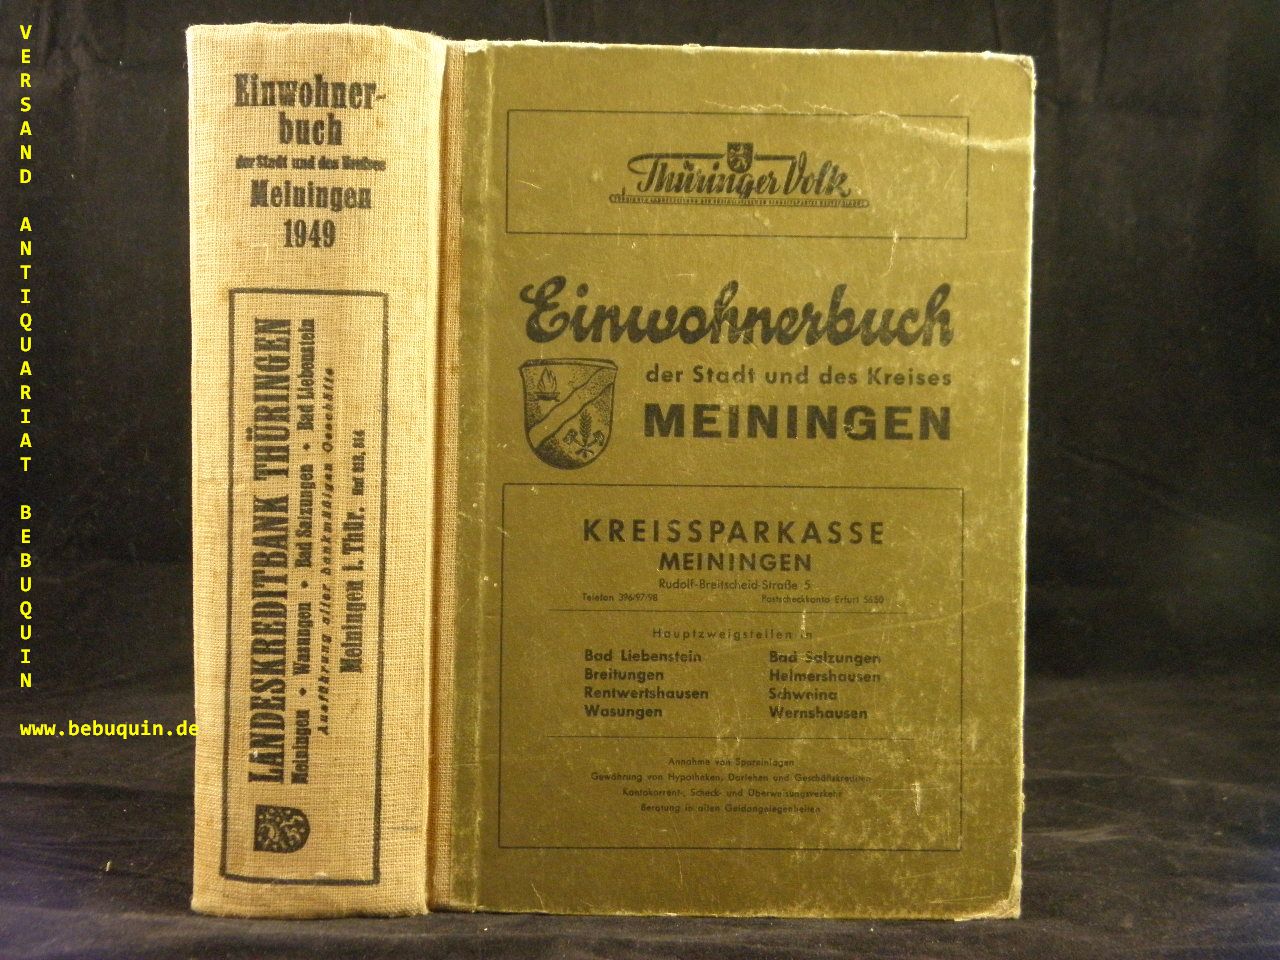 MEINIGEN.- - EINWOHNERBUCH DER STADT UND DES KREISES MEININGEN 1949.-  Mit den Stdten Wasungen, Bad Salzungen und 85 Gemeinden.